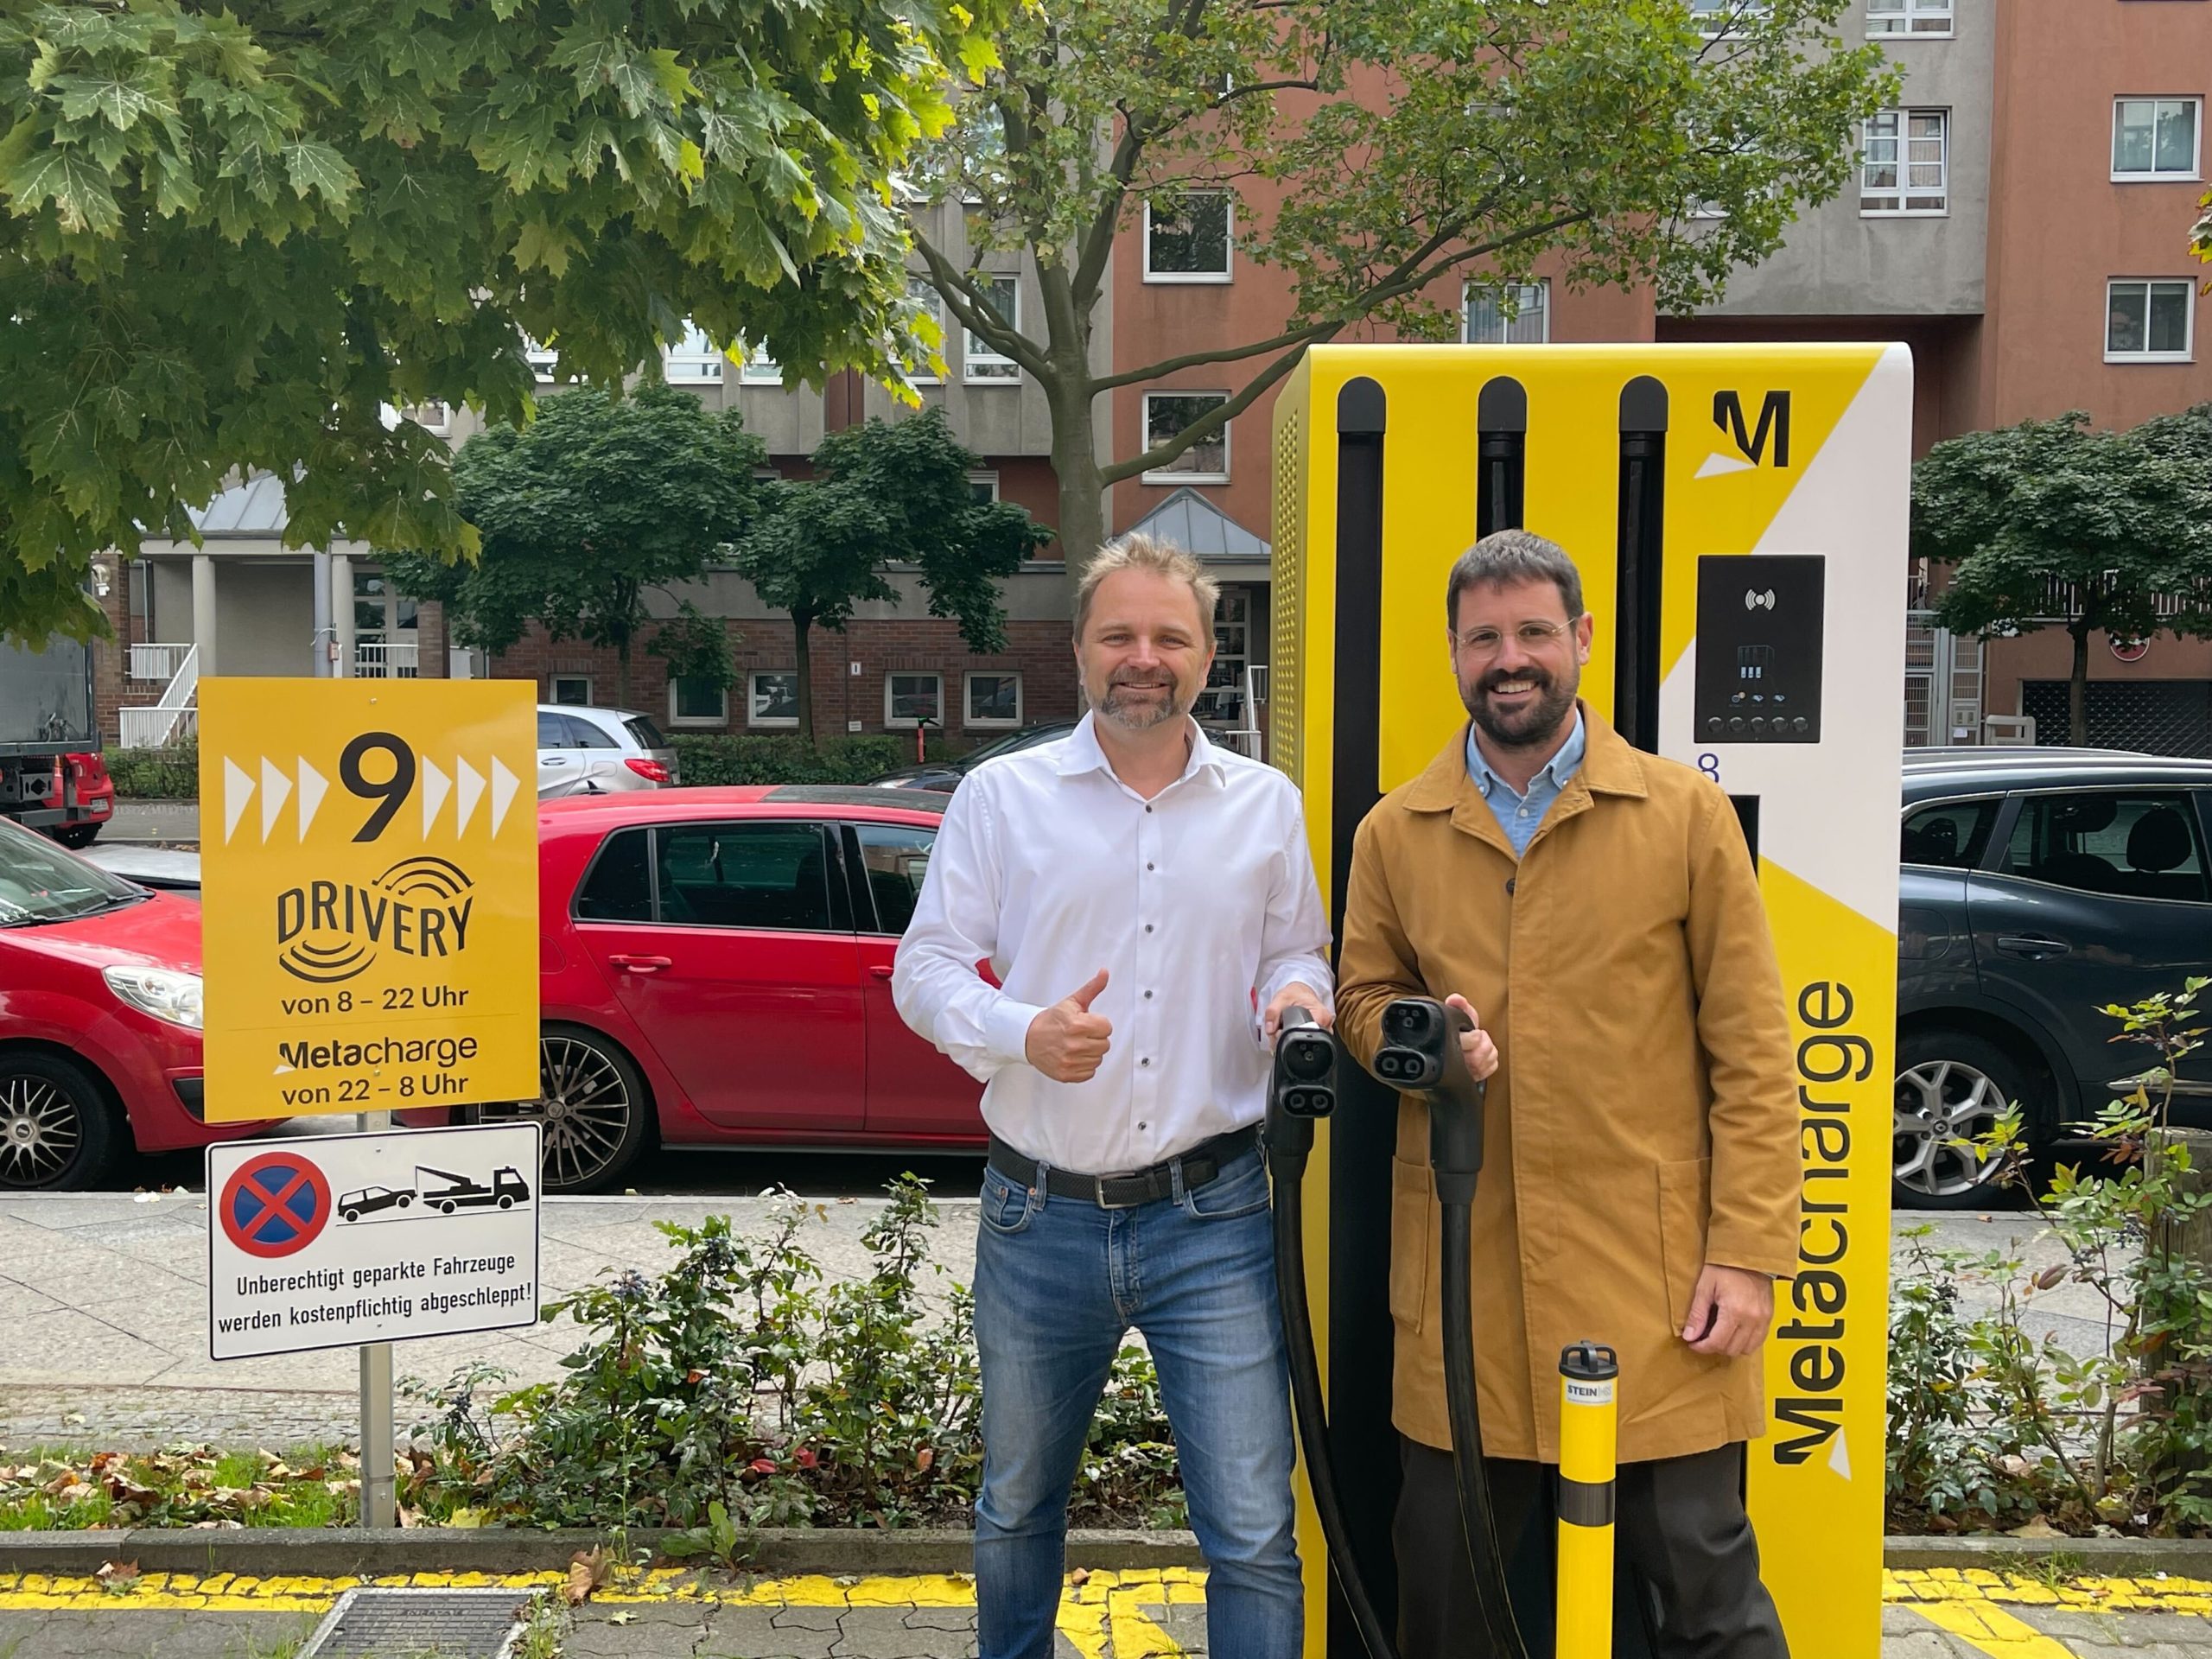 Schnellladen für Gewerbetreibende: Metacharge und EVTEC starten an der The Drivery Berlin ersten Ladeservice, bei dem Laden garantiert wird